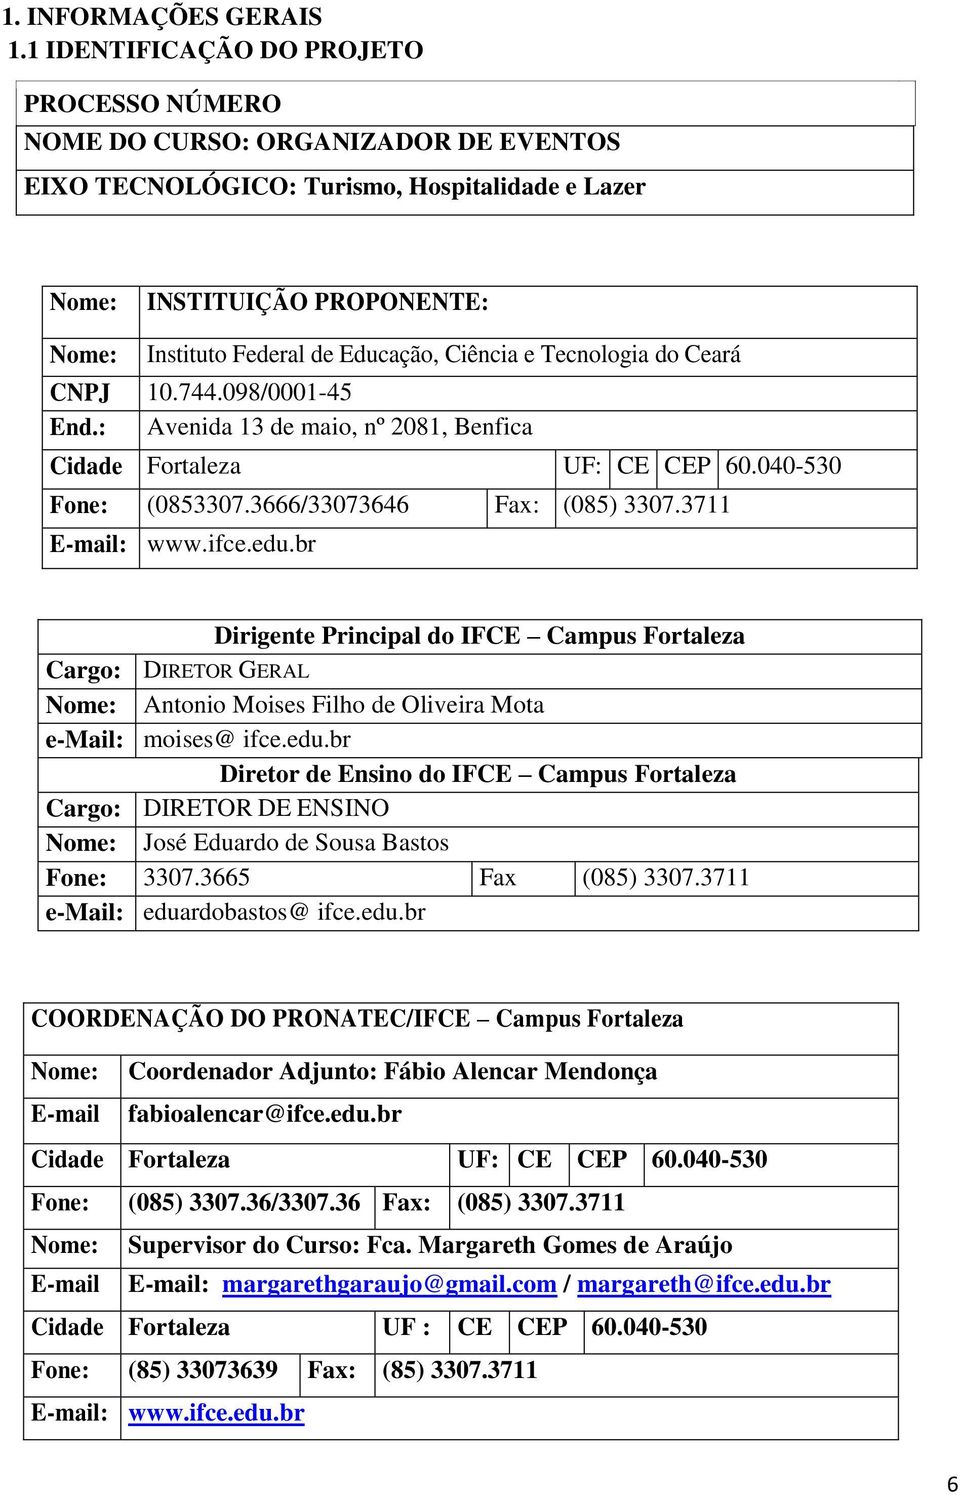 Ciência e Tecnologia do Ceará CNPJ 10.744.098/0001-45 End.: Avenida 13 de maio, nº 2081, Benfica Cidade Fortaleza UF: CE CEP 60.040-530 Fone: (0853307.3666/33073646 Fax: (085) 3307.3711 E-mail: www.